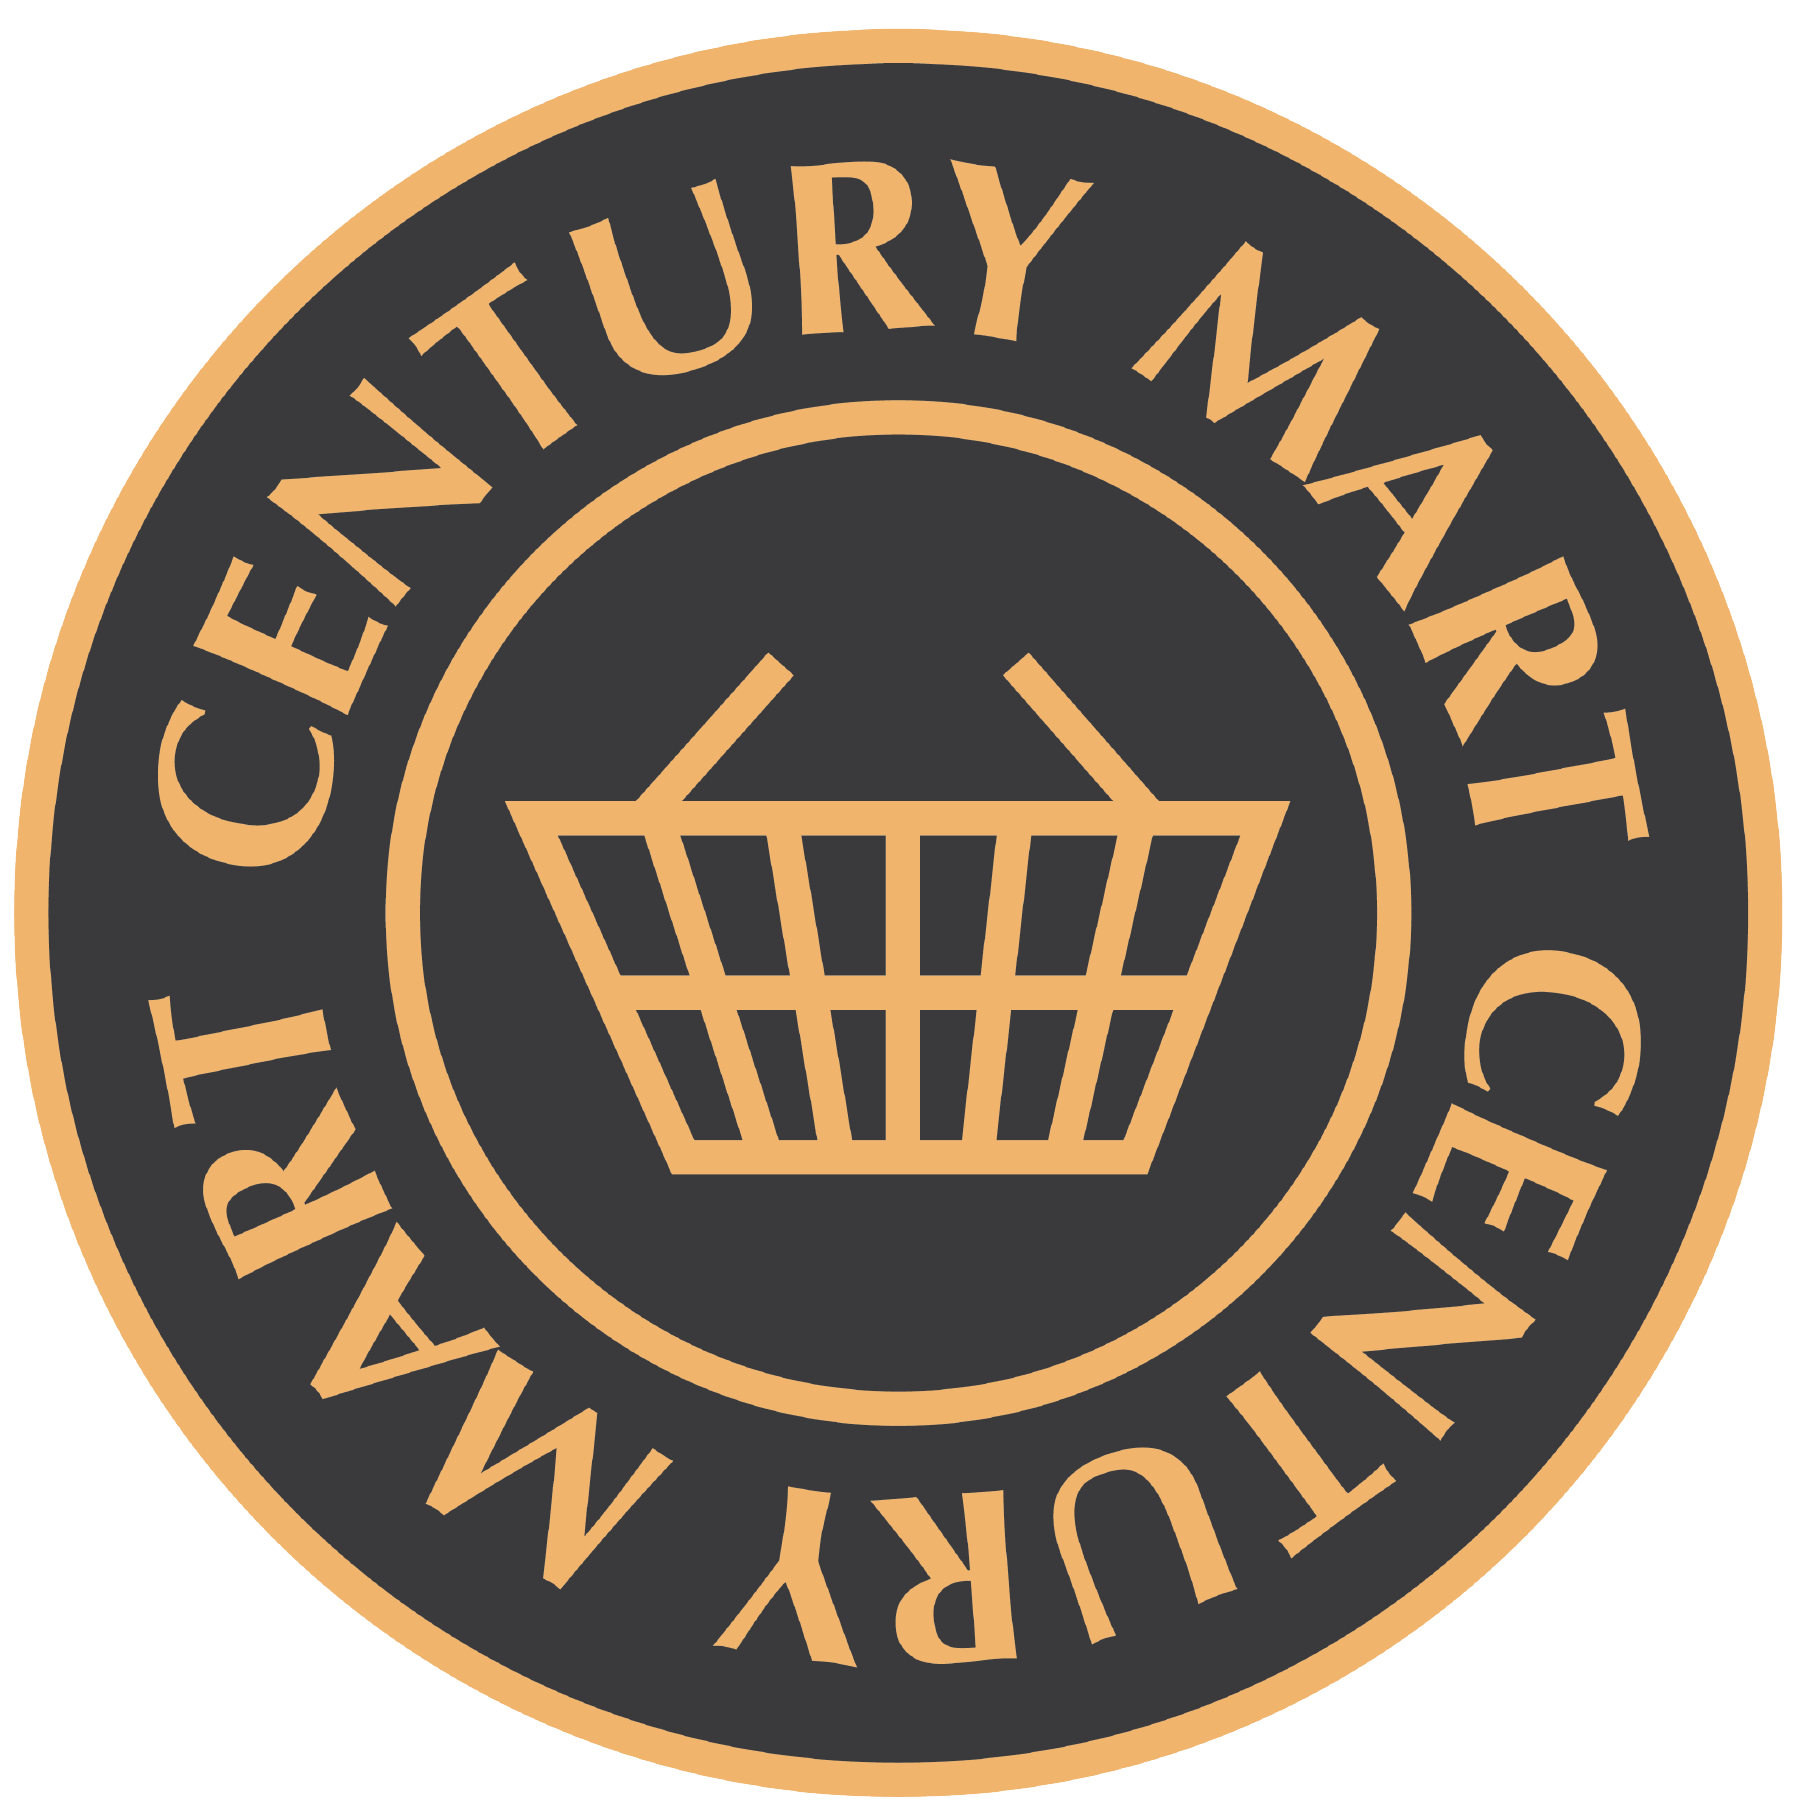 Century Mart - Hungarian Store Logo-01